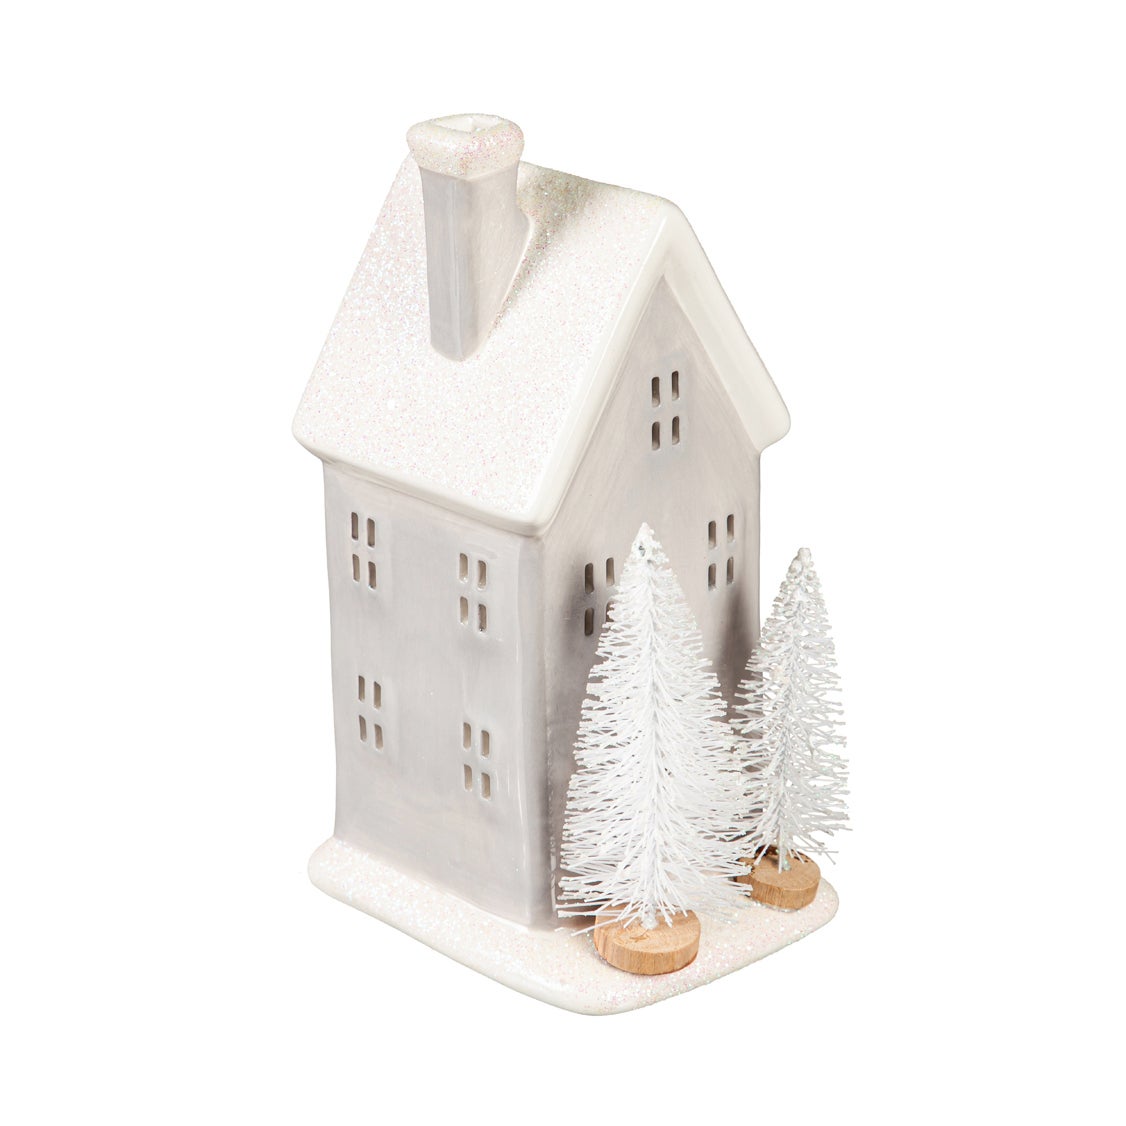 8" LED Ceramic House with White Bottlebrush Trees Table Decor